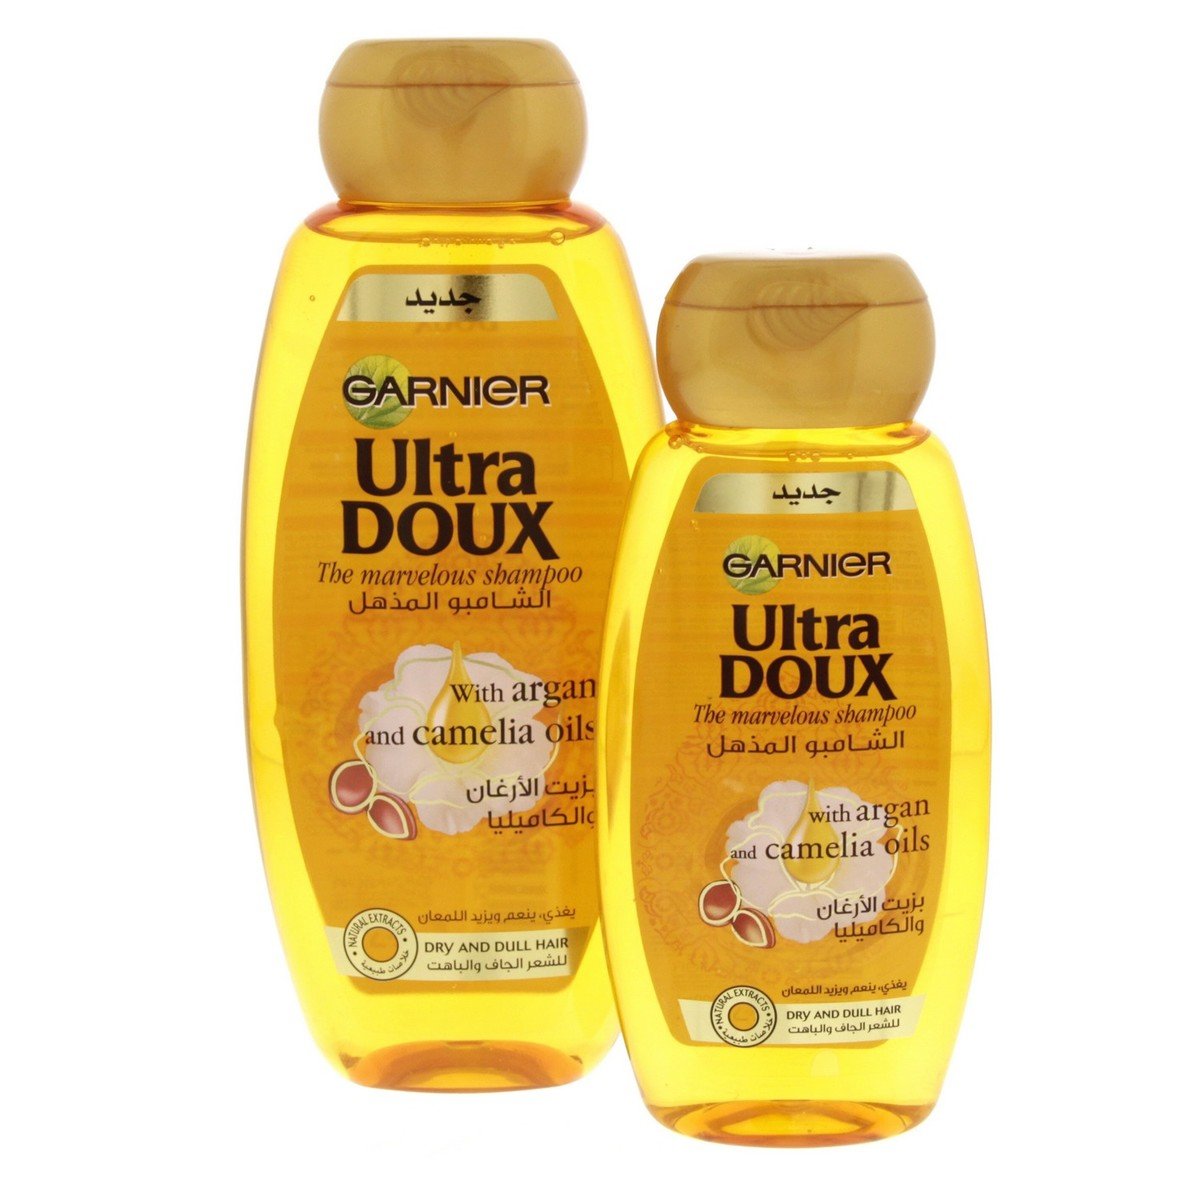 Garnier Ultra Doux The Marvellous Shampoo With Argan And Camelia Oil 400ml + 200ml